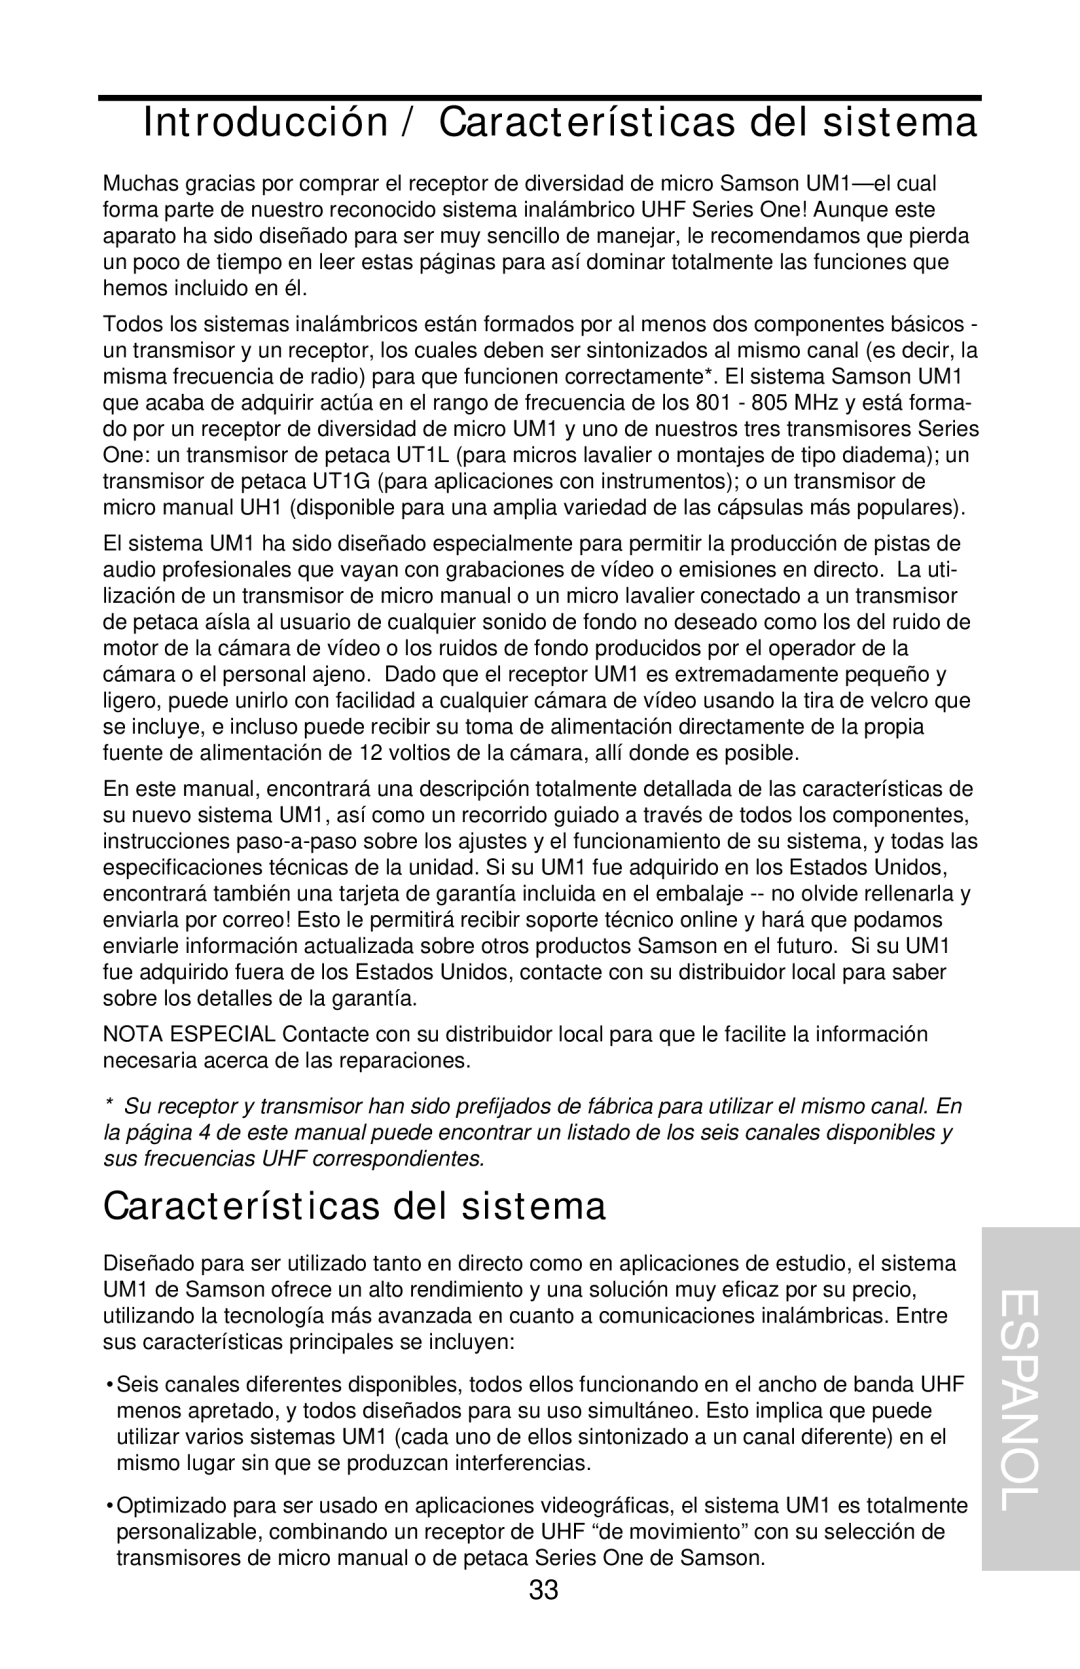 Samson UHF Series One owner manual Espanol, Introducción / Características del sistema 